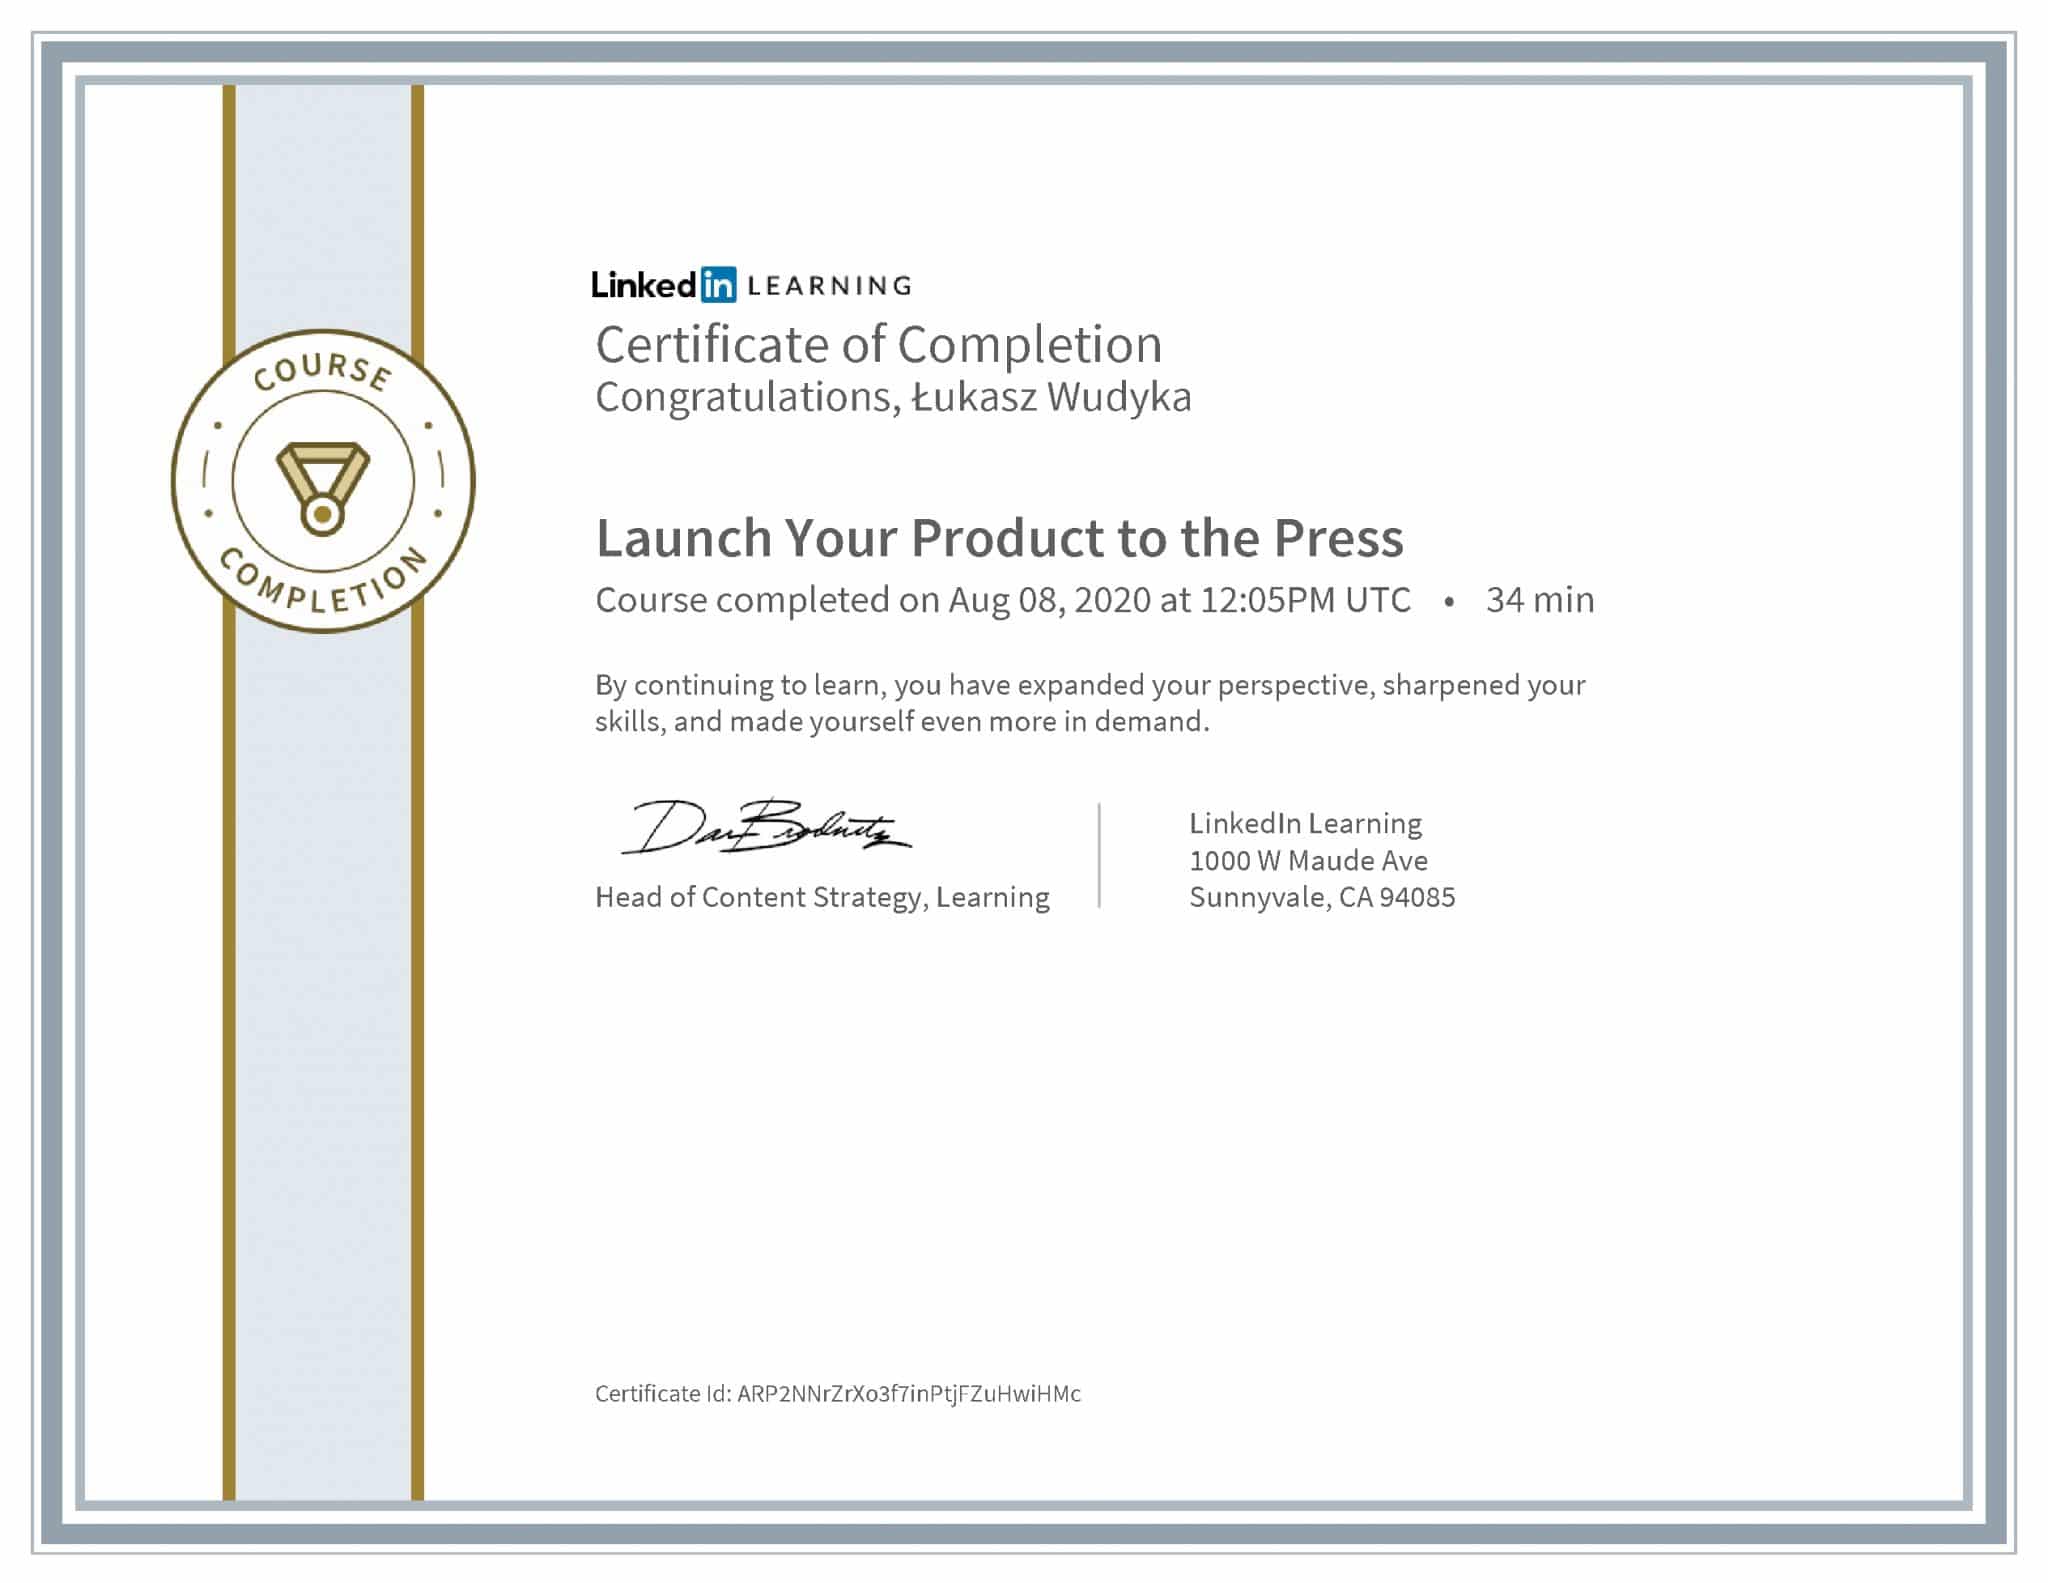 Łukasz Wudyka certyfikat LinkedIn Launch Your Product to the Press